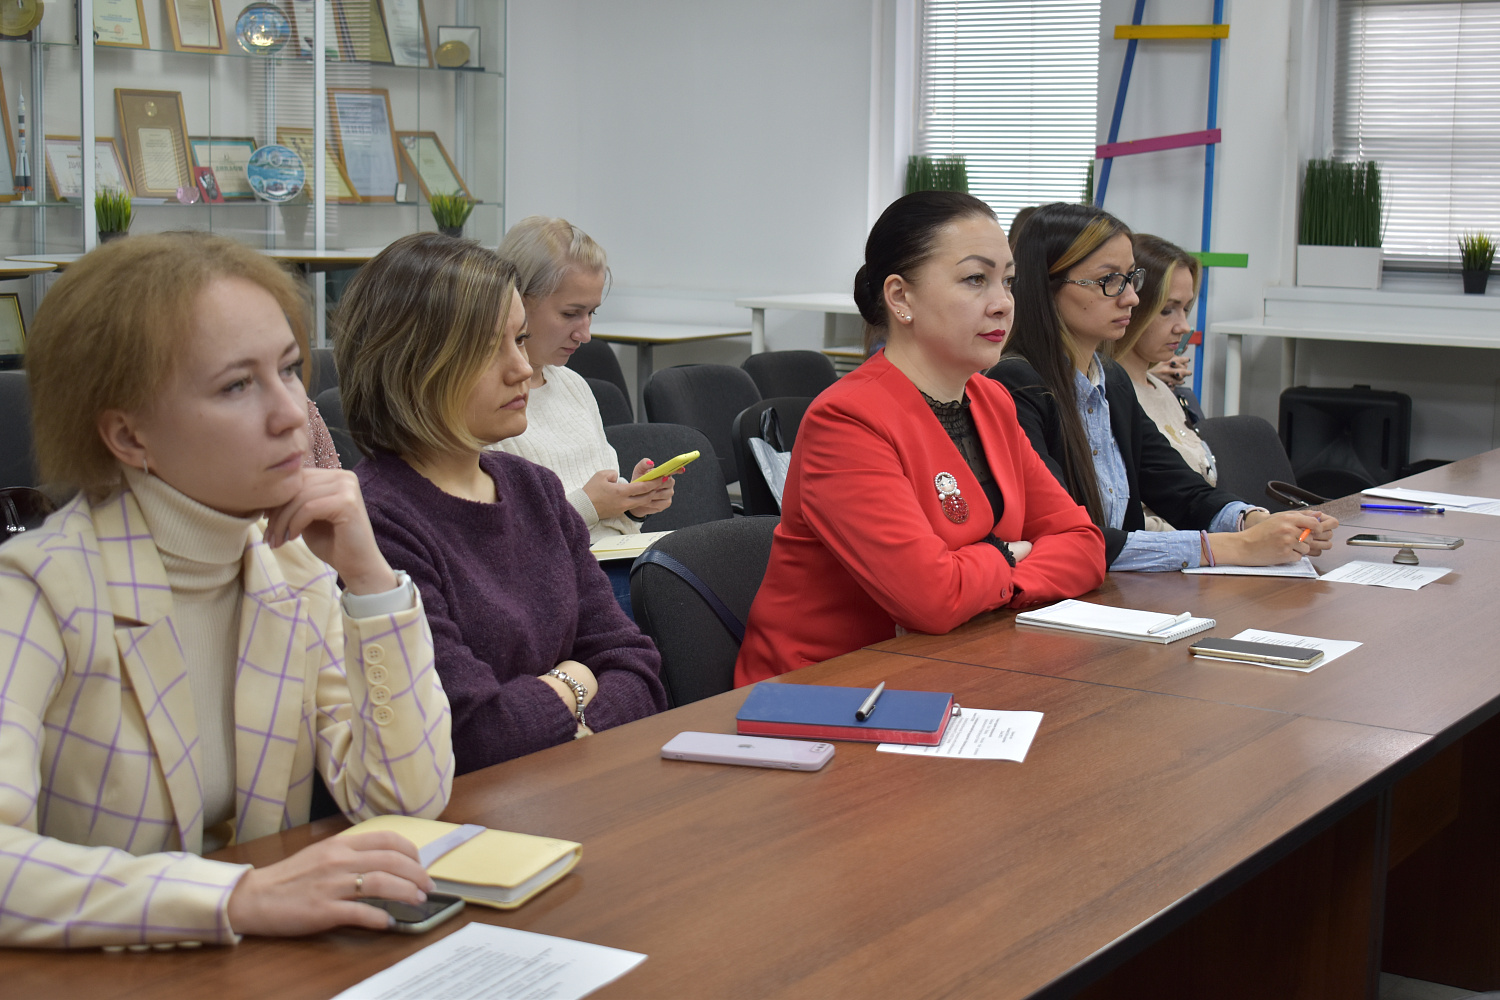 24 мая 2022 г. в Торгово-промышленной палате Чувашской Республики состоялось заседание Клуба кадровиков.